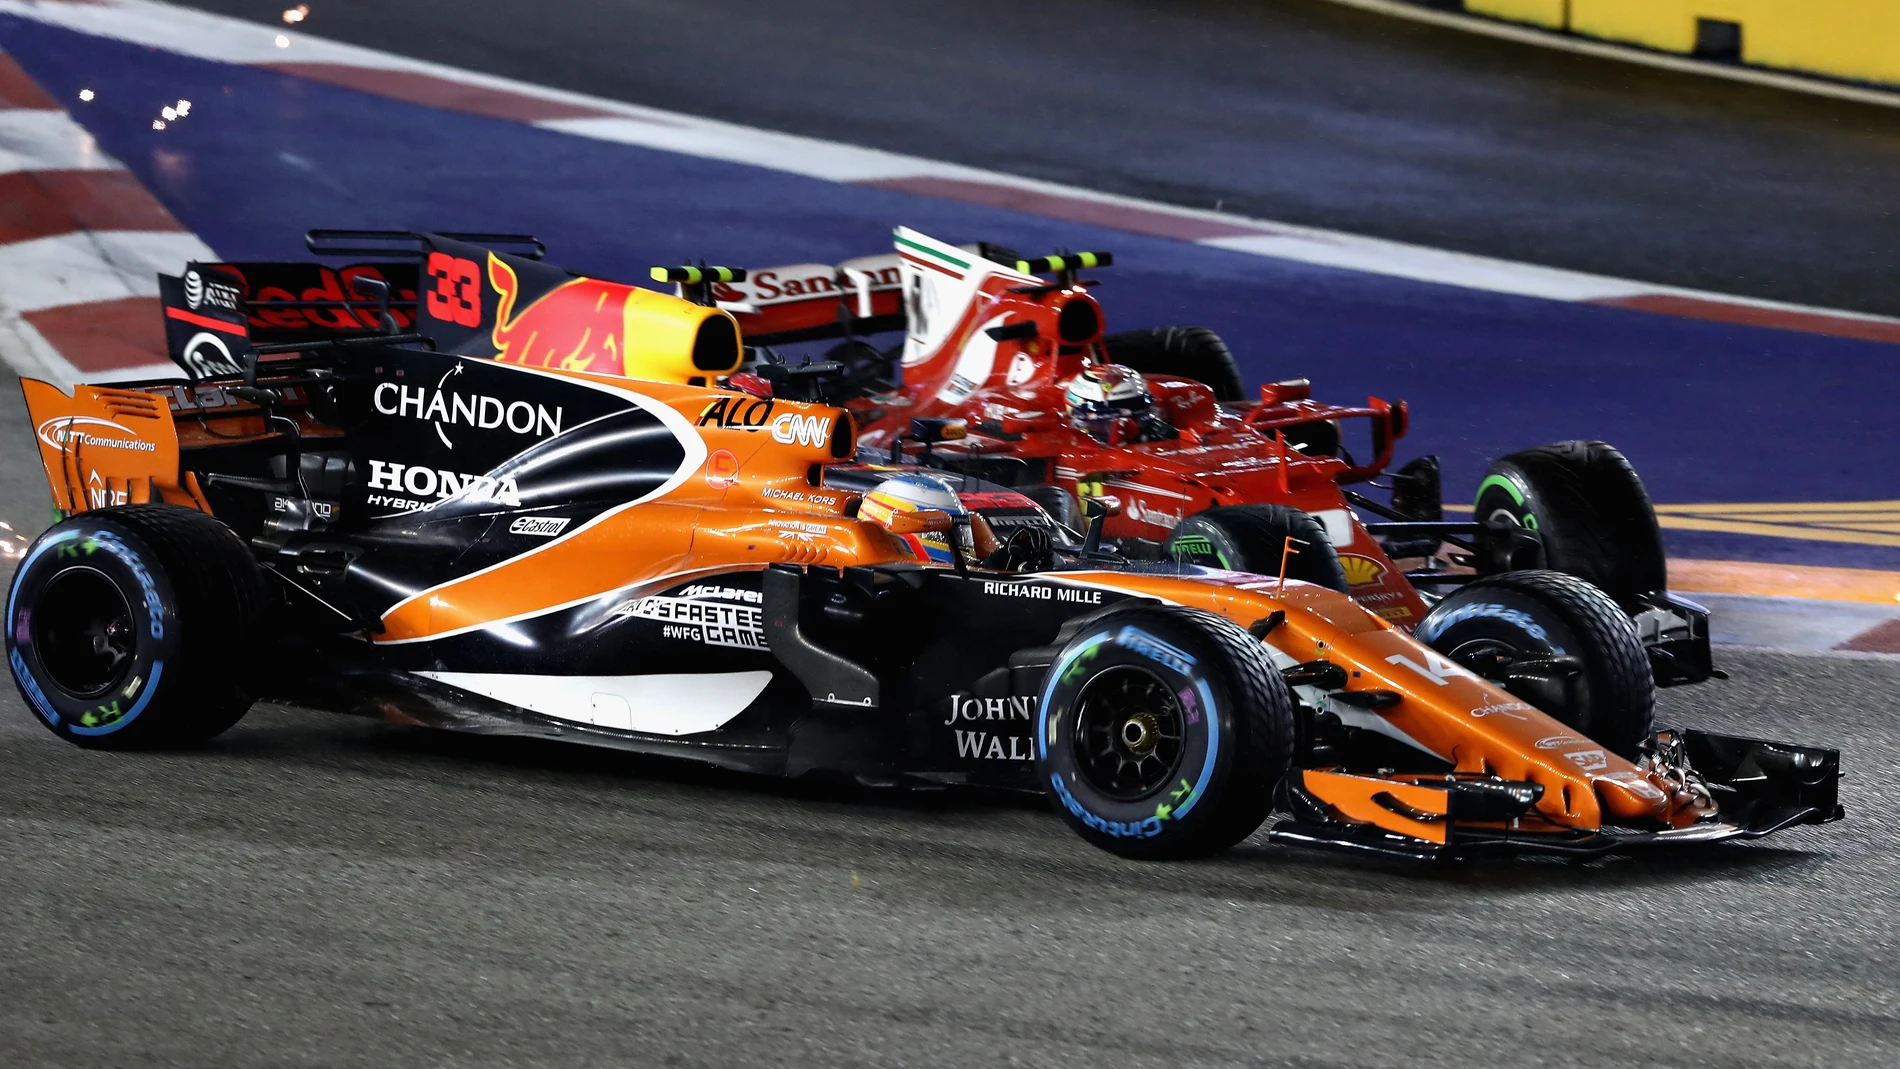 Fernando Alonso, embestido en la accidentada salida de Singapur